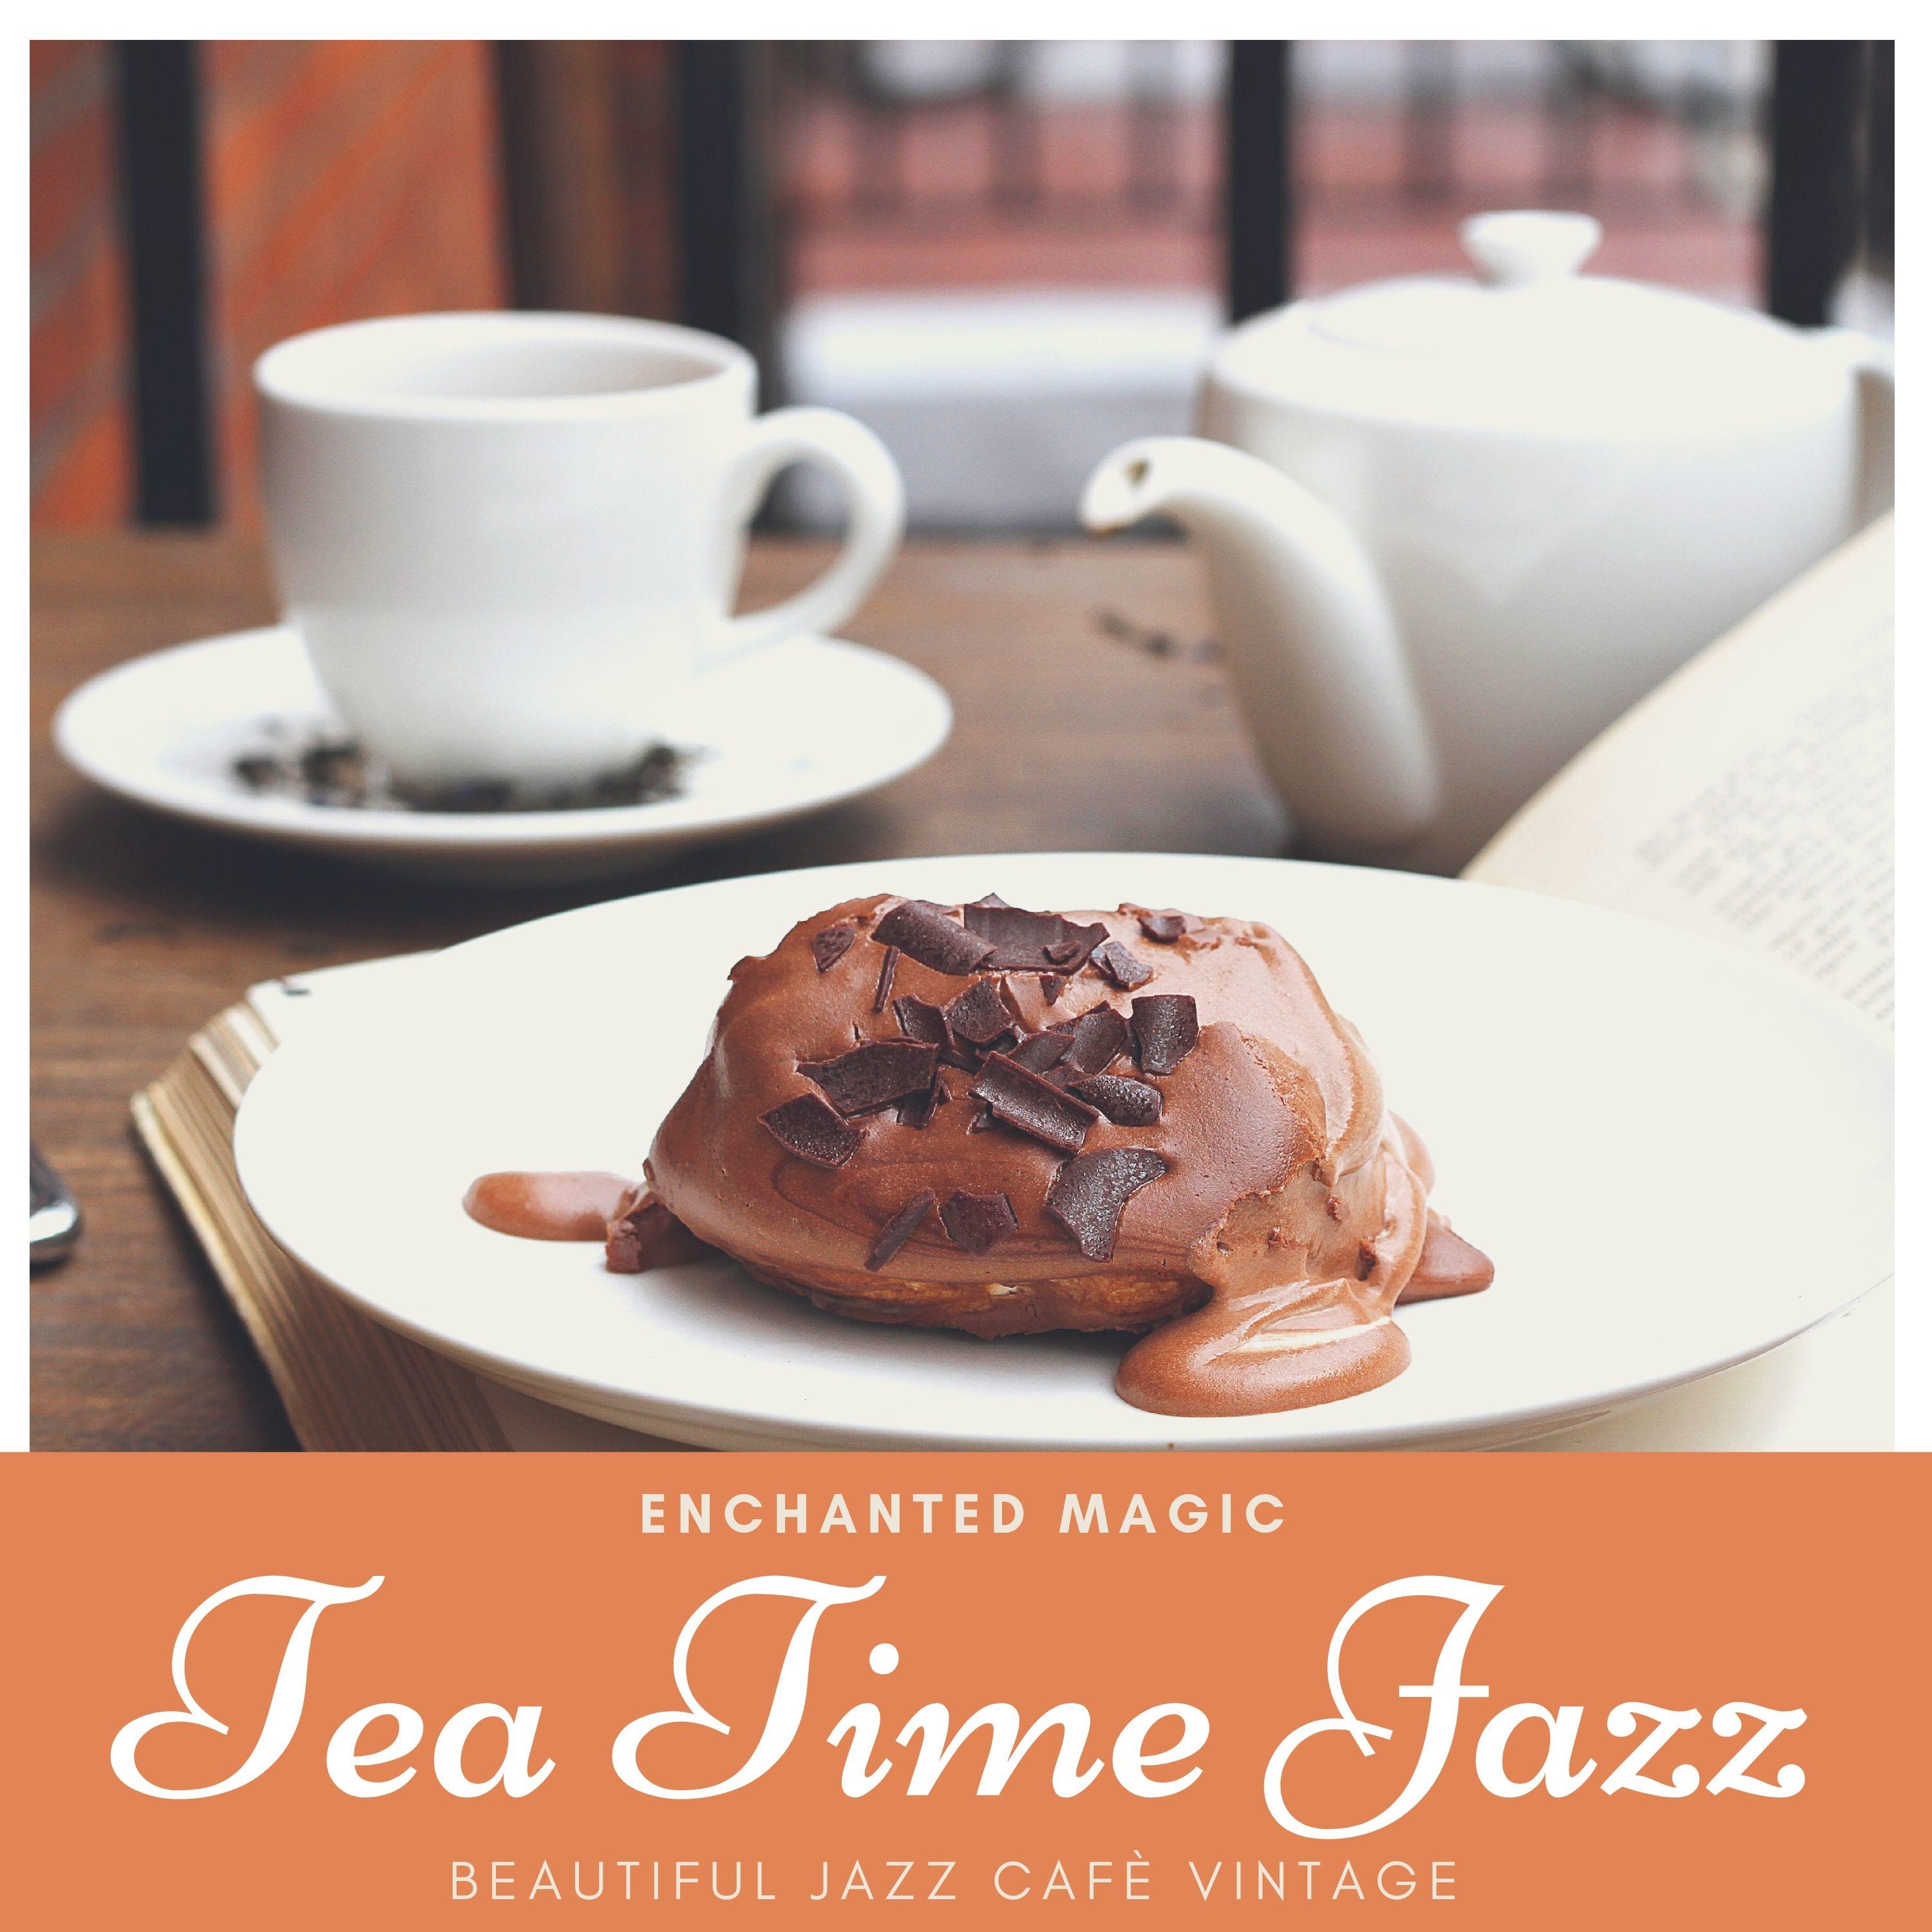 Tea Time Jazz